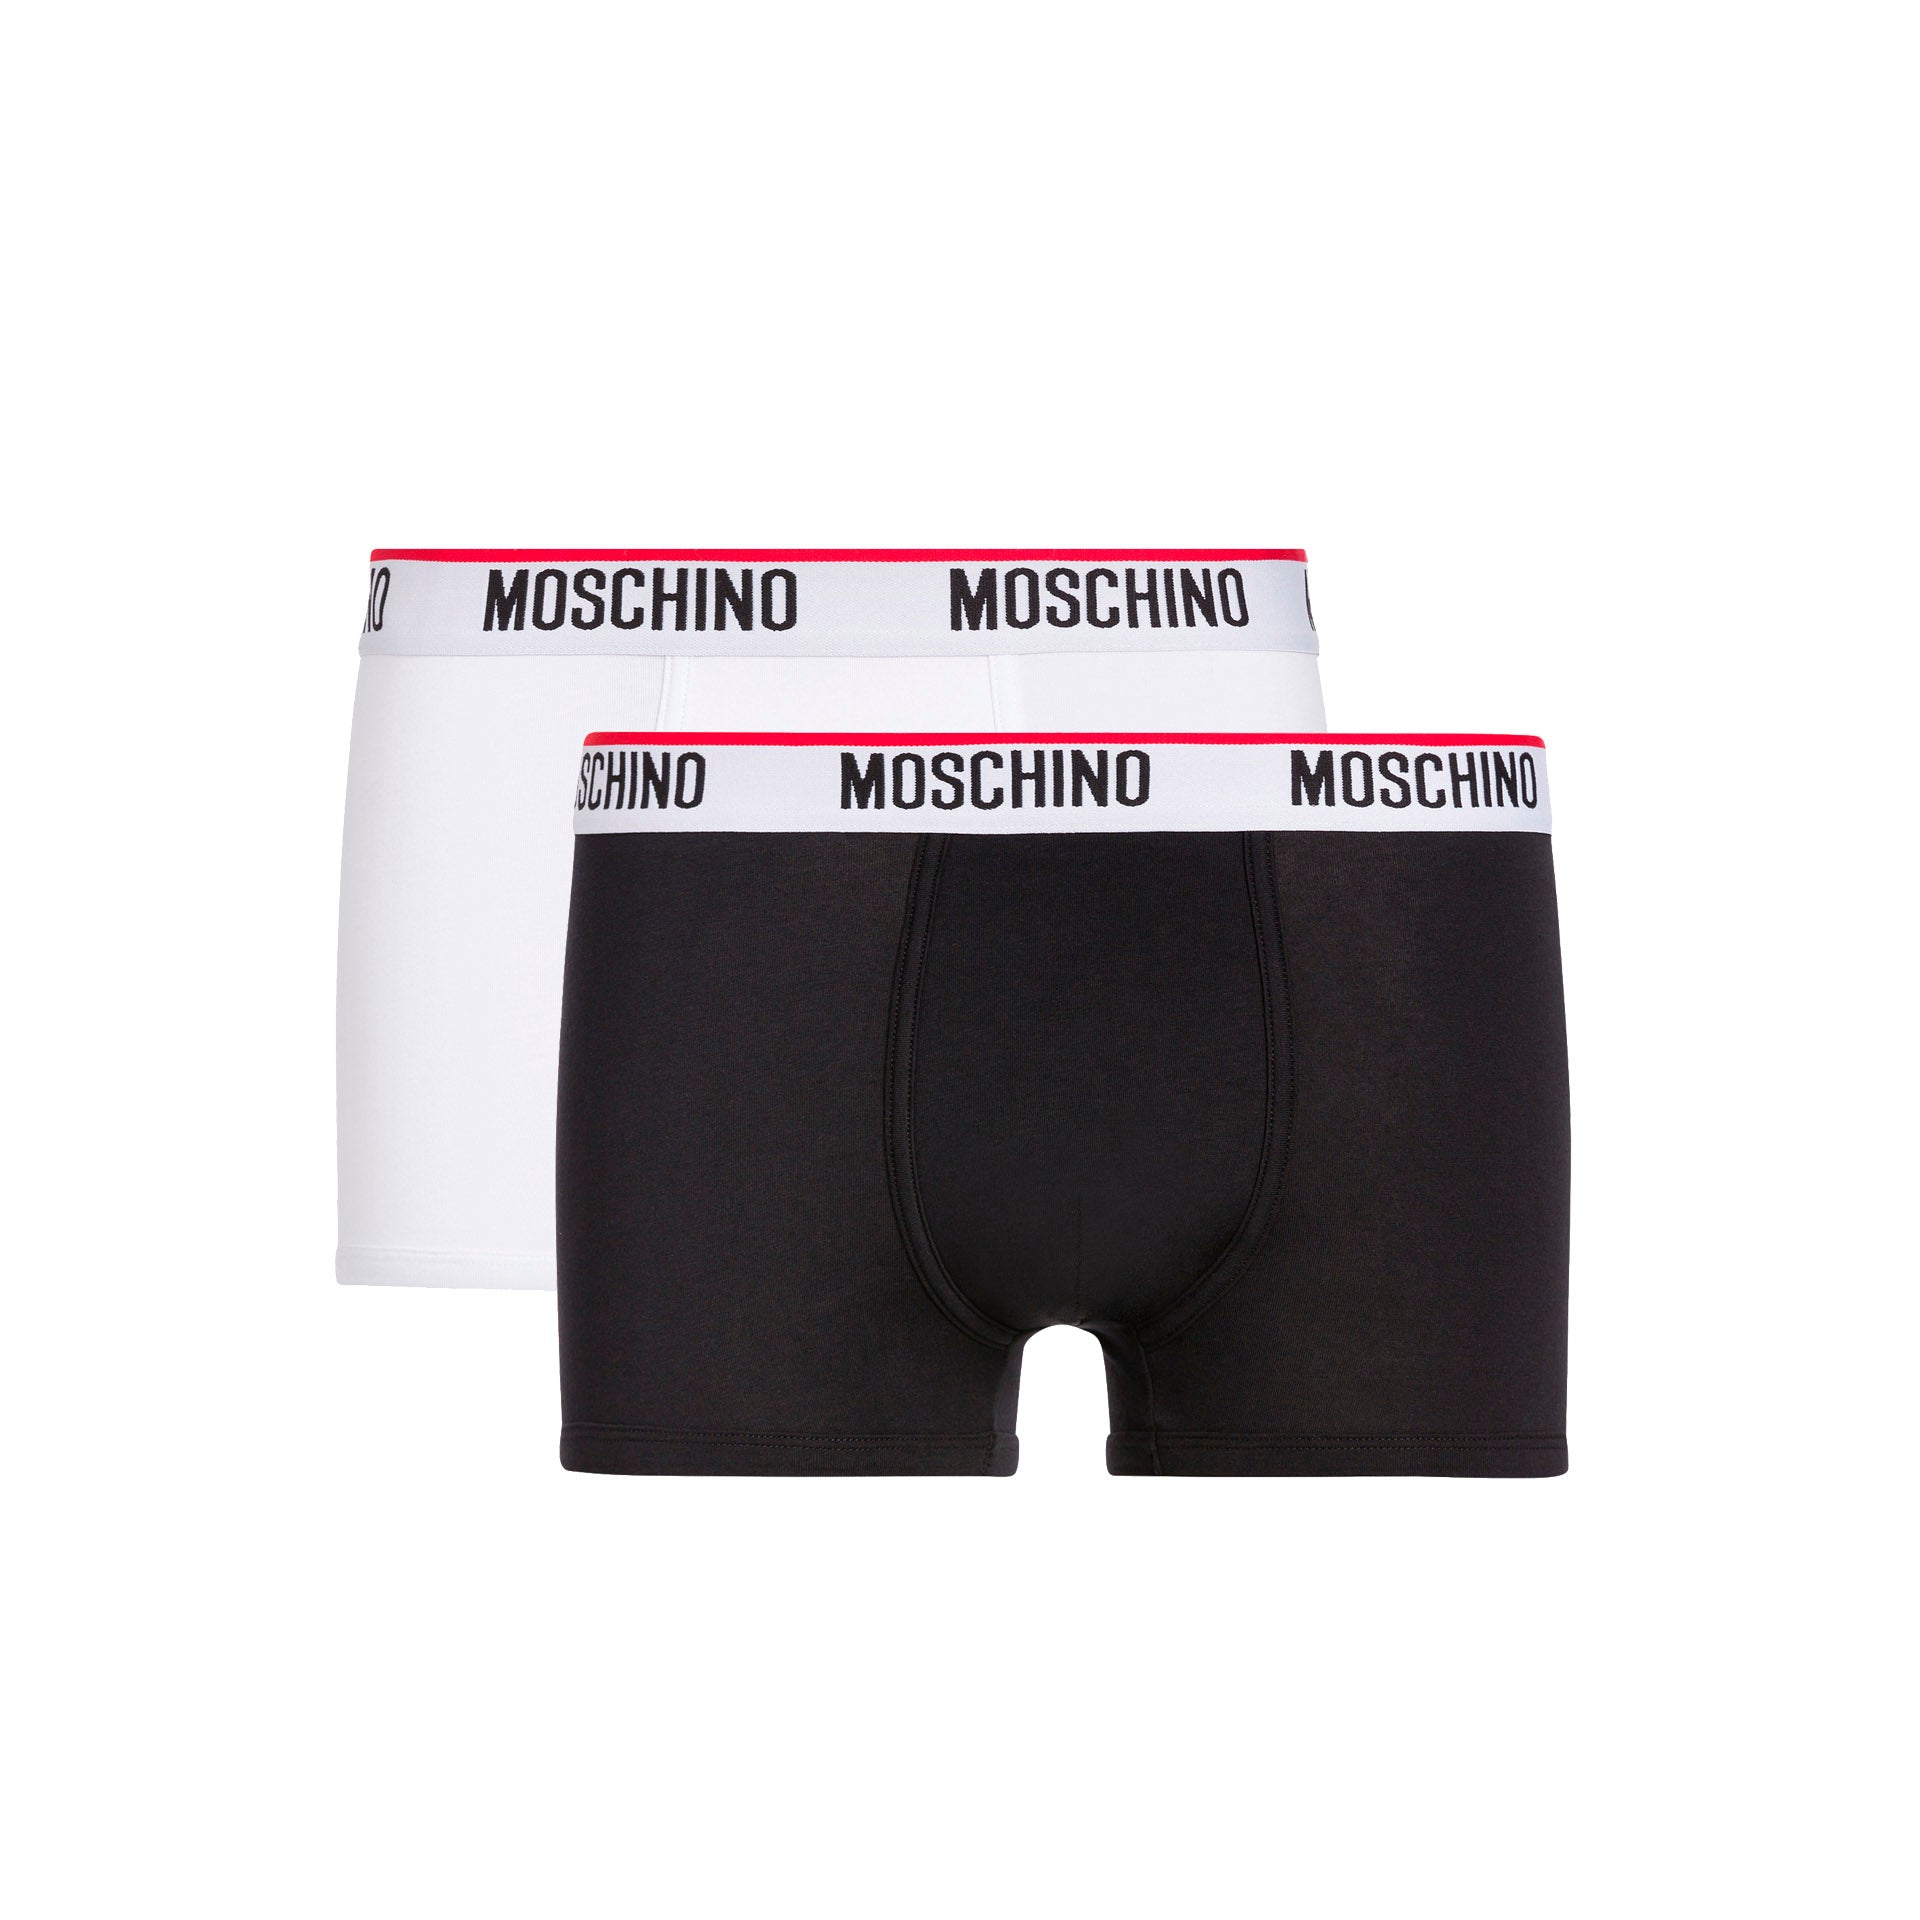 Moschino Boxer Algodão Branco/Preto - Pack 2